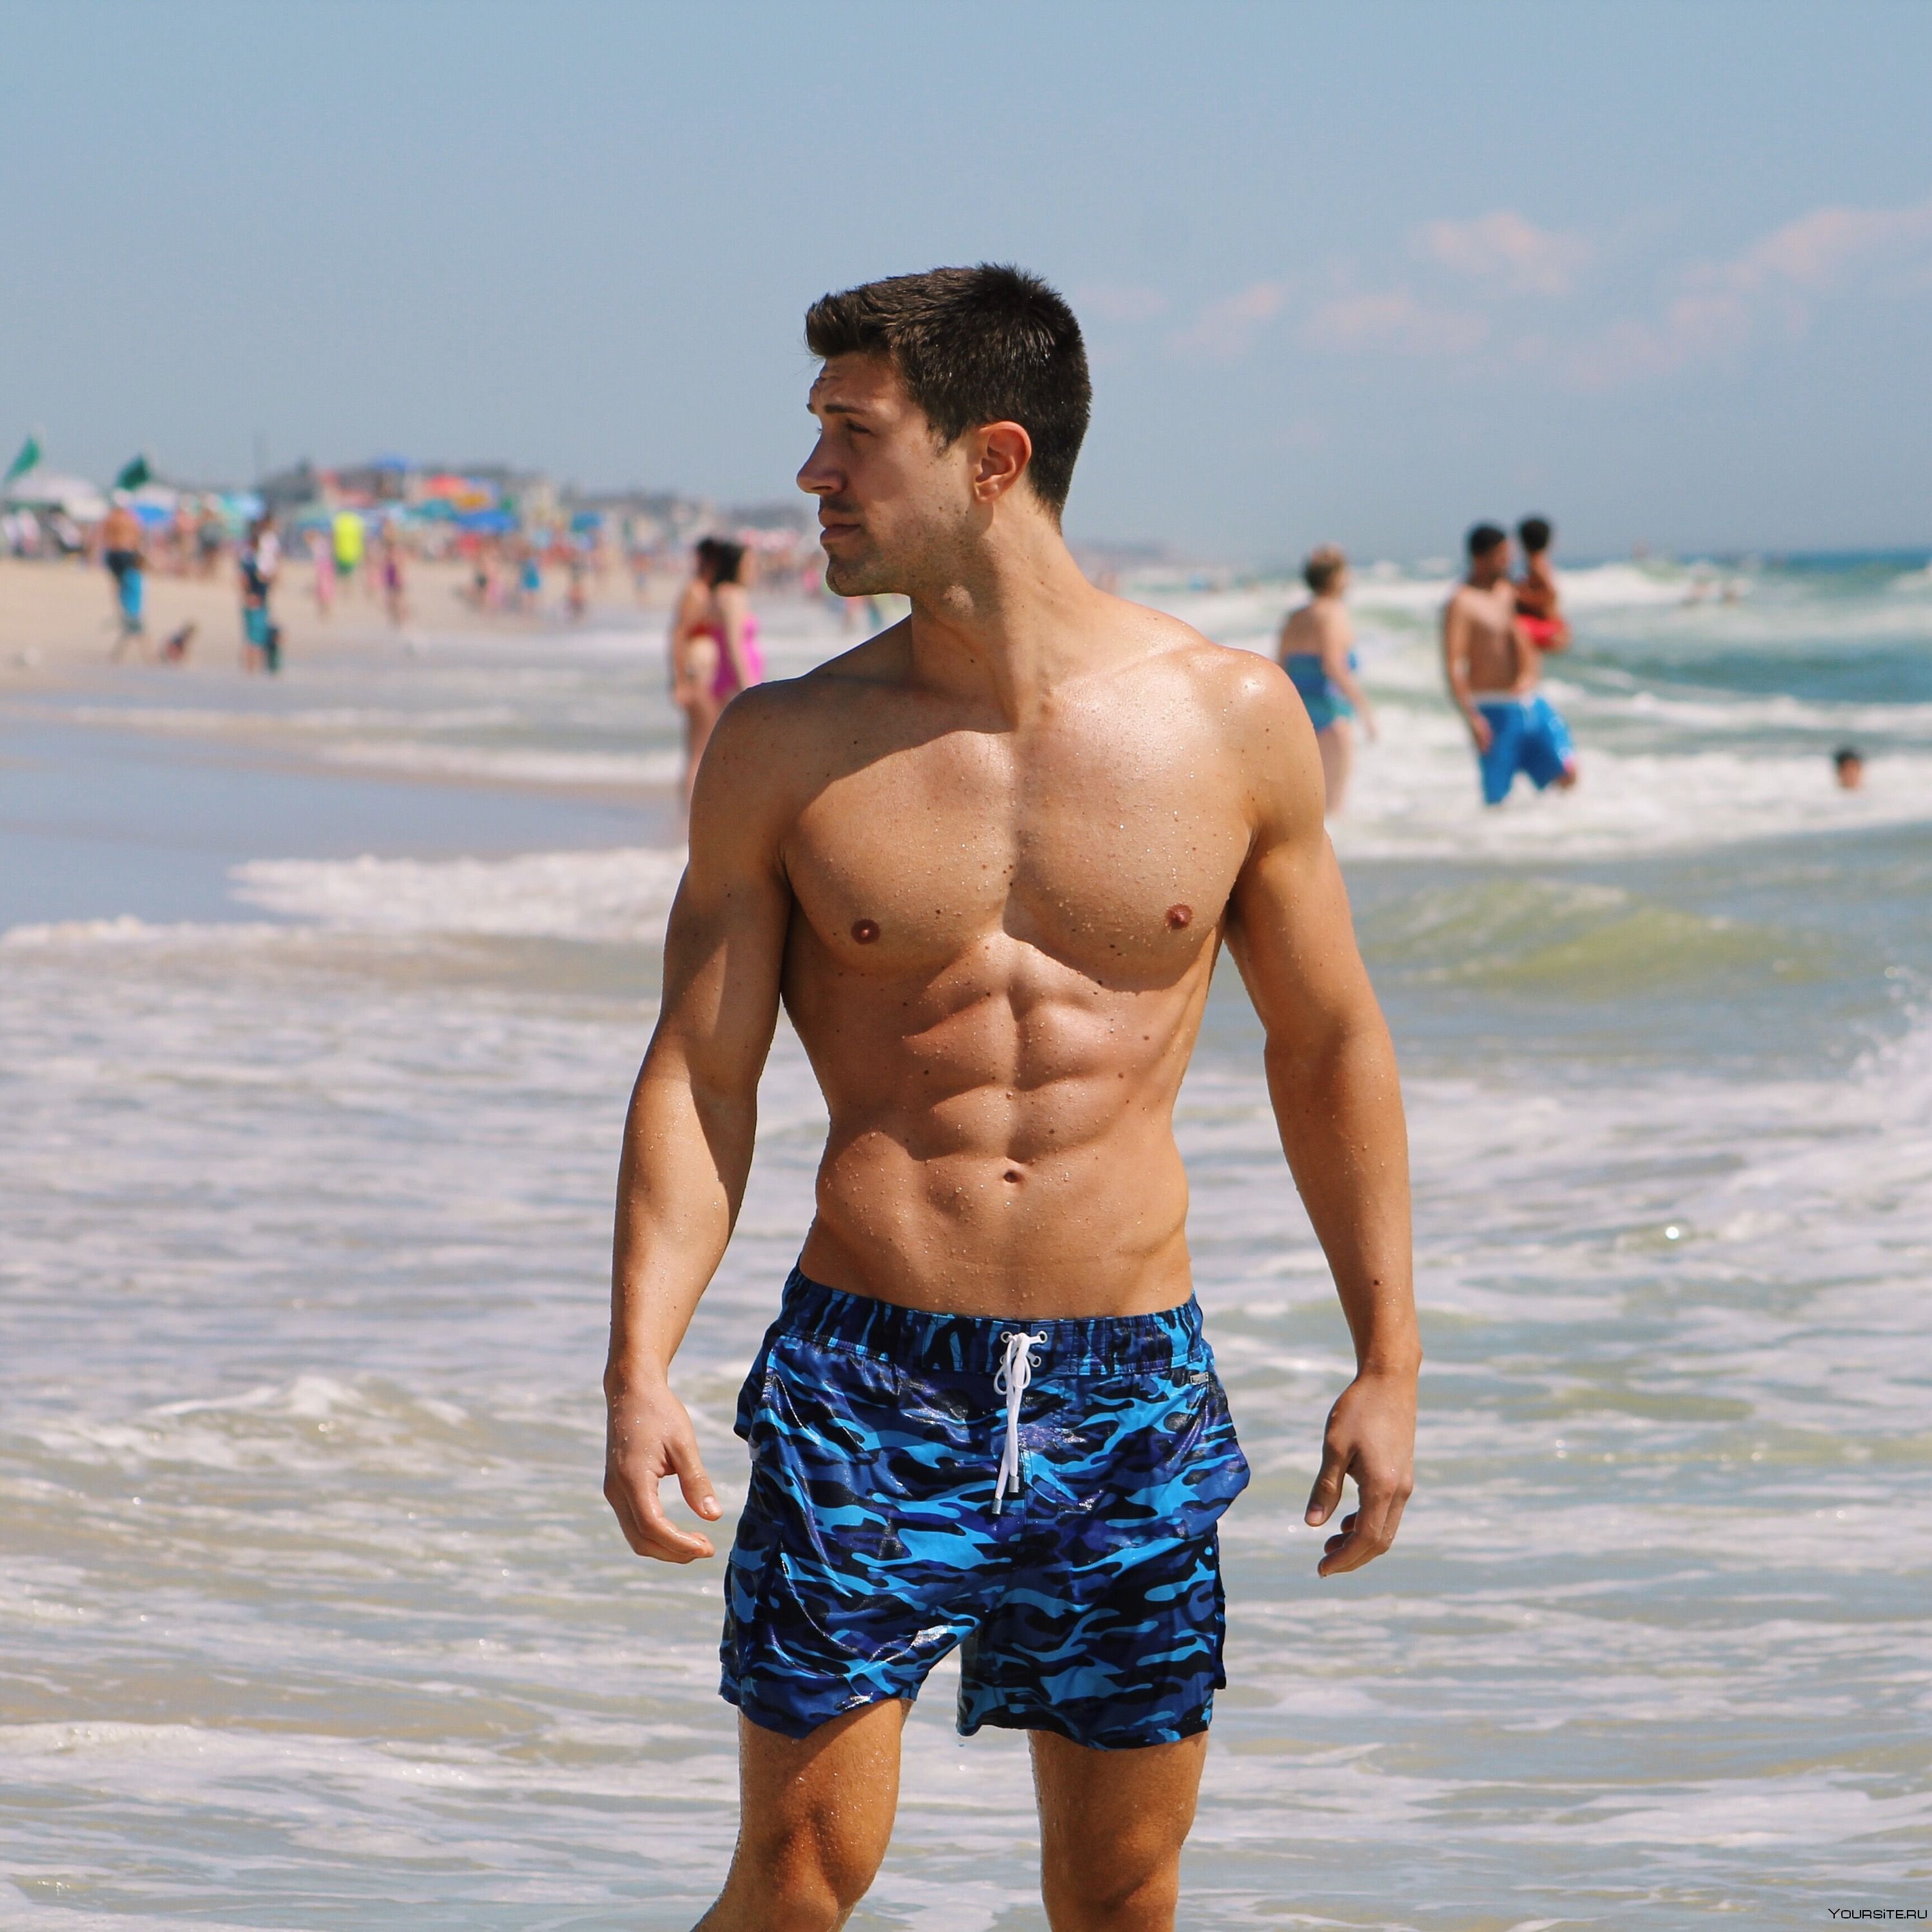 Накаченный на пляже. Спортивные парни на пляже. Мужчина на пляже. Накаченные мужчины на пляже. Красивые мужчины на пляже.